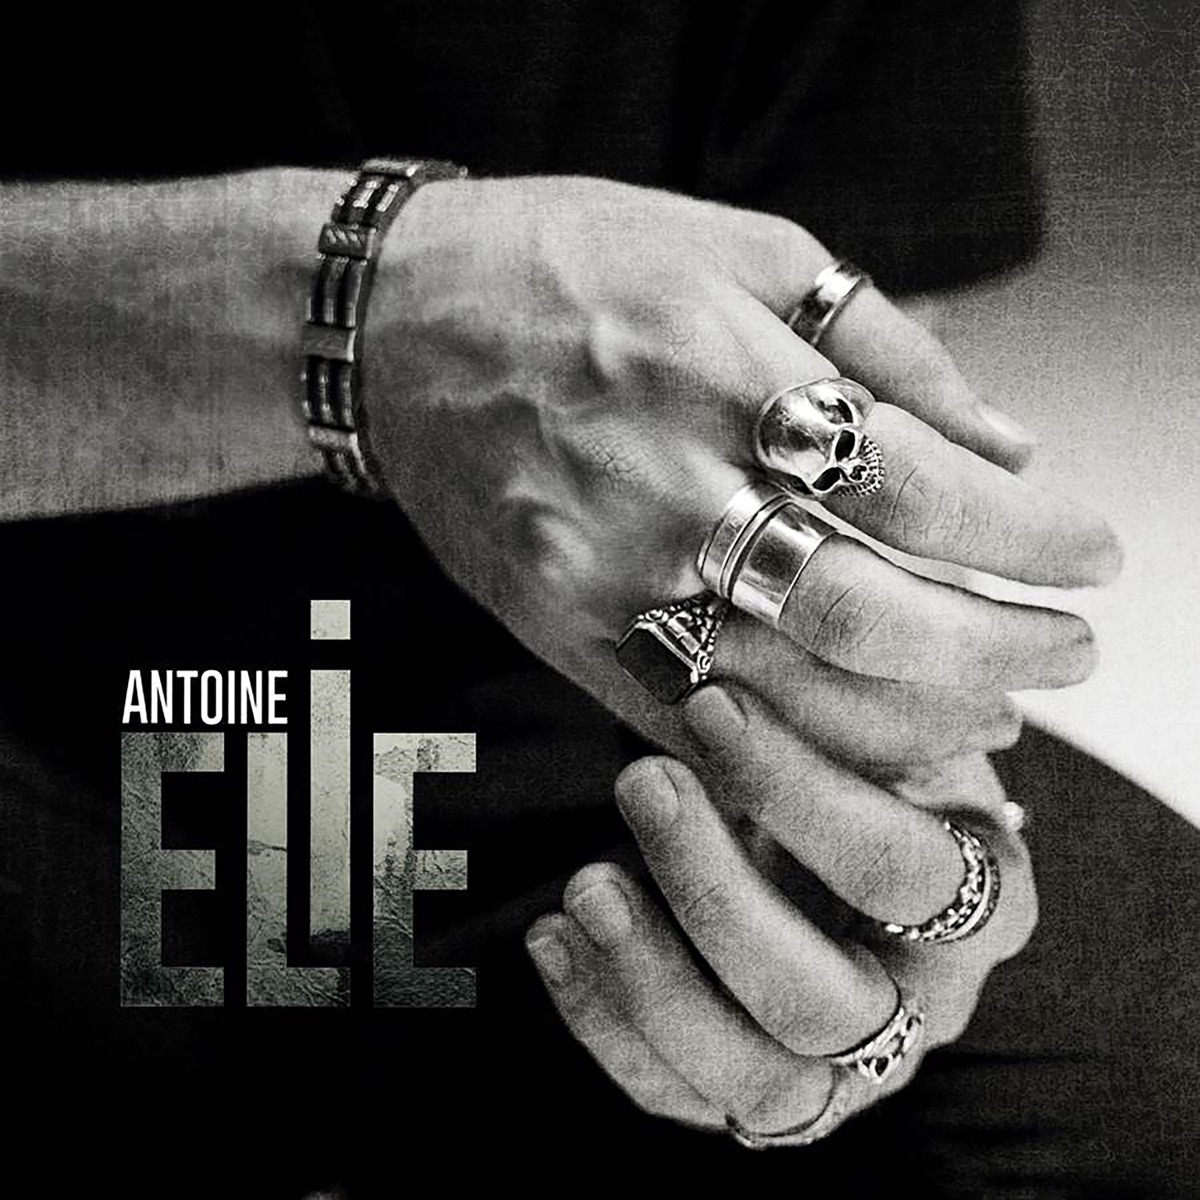 La rose et l'armure (Radio Edit) - Single by Antoine Elie on Apple Music